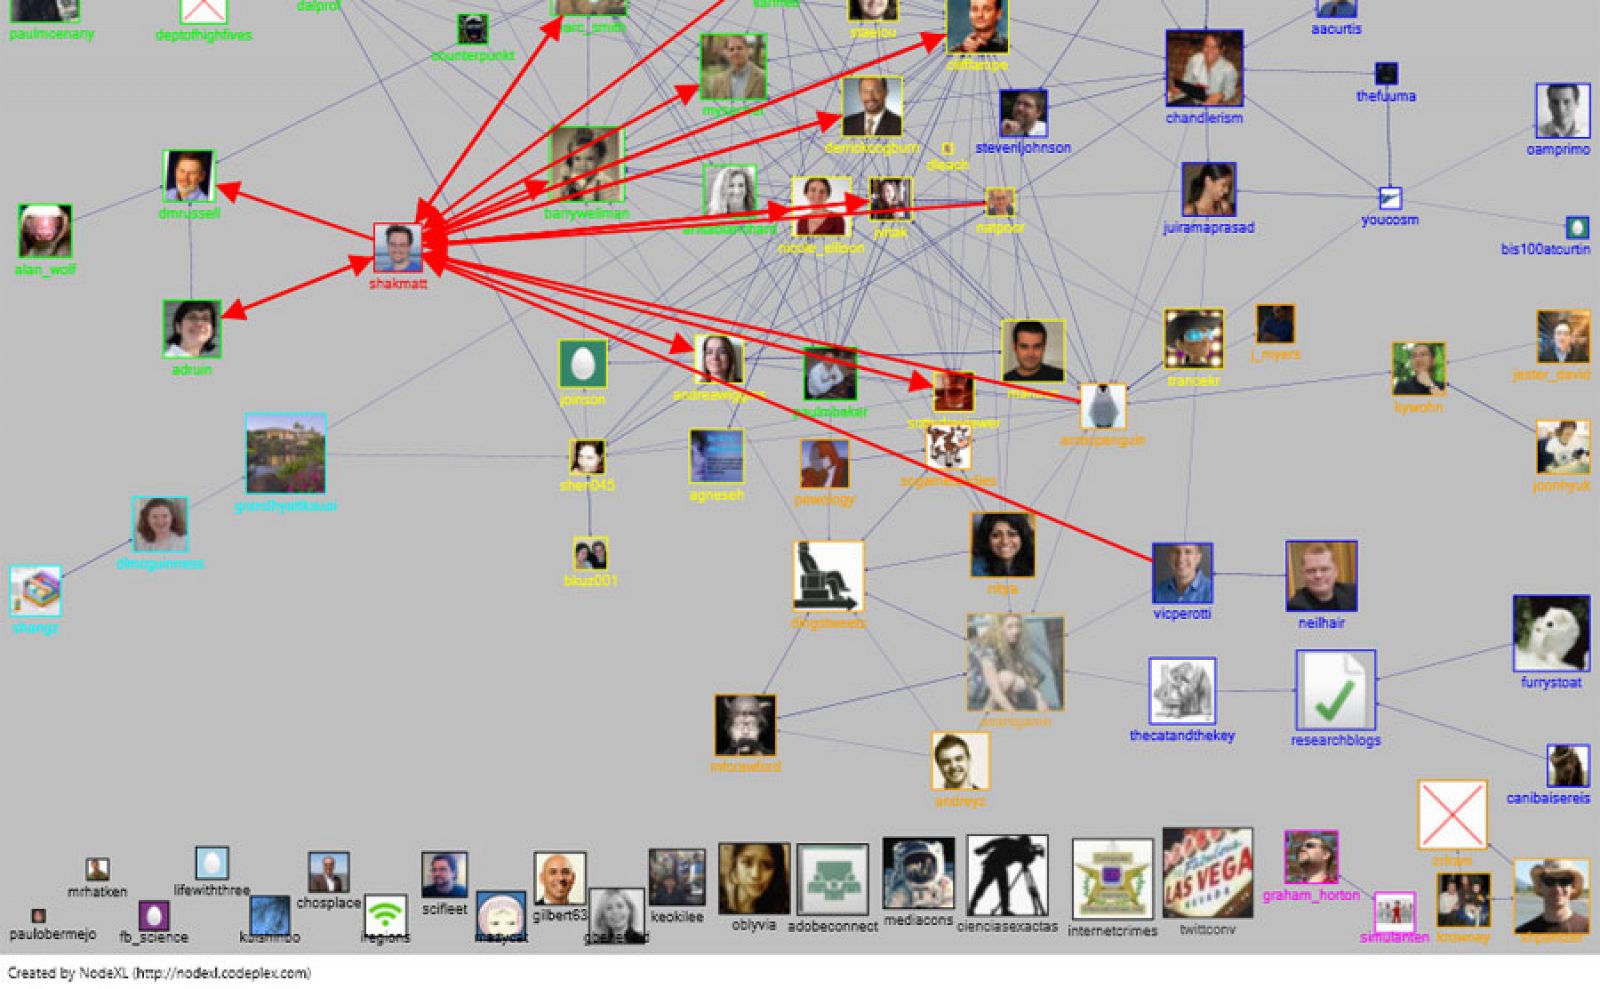 Visualización de una red social formada por usuarios de Twitter